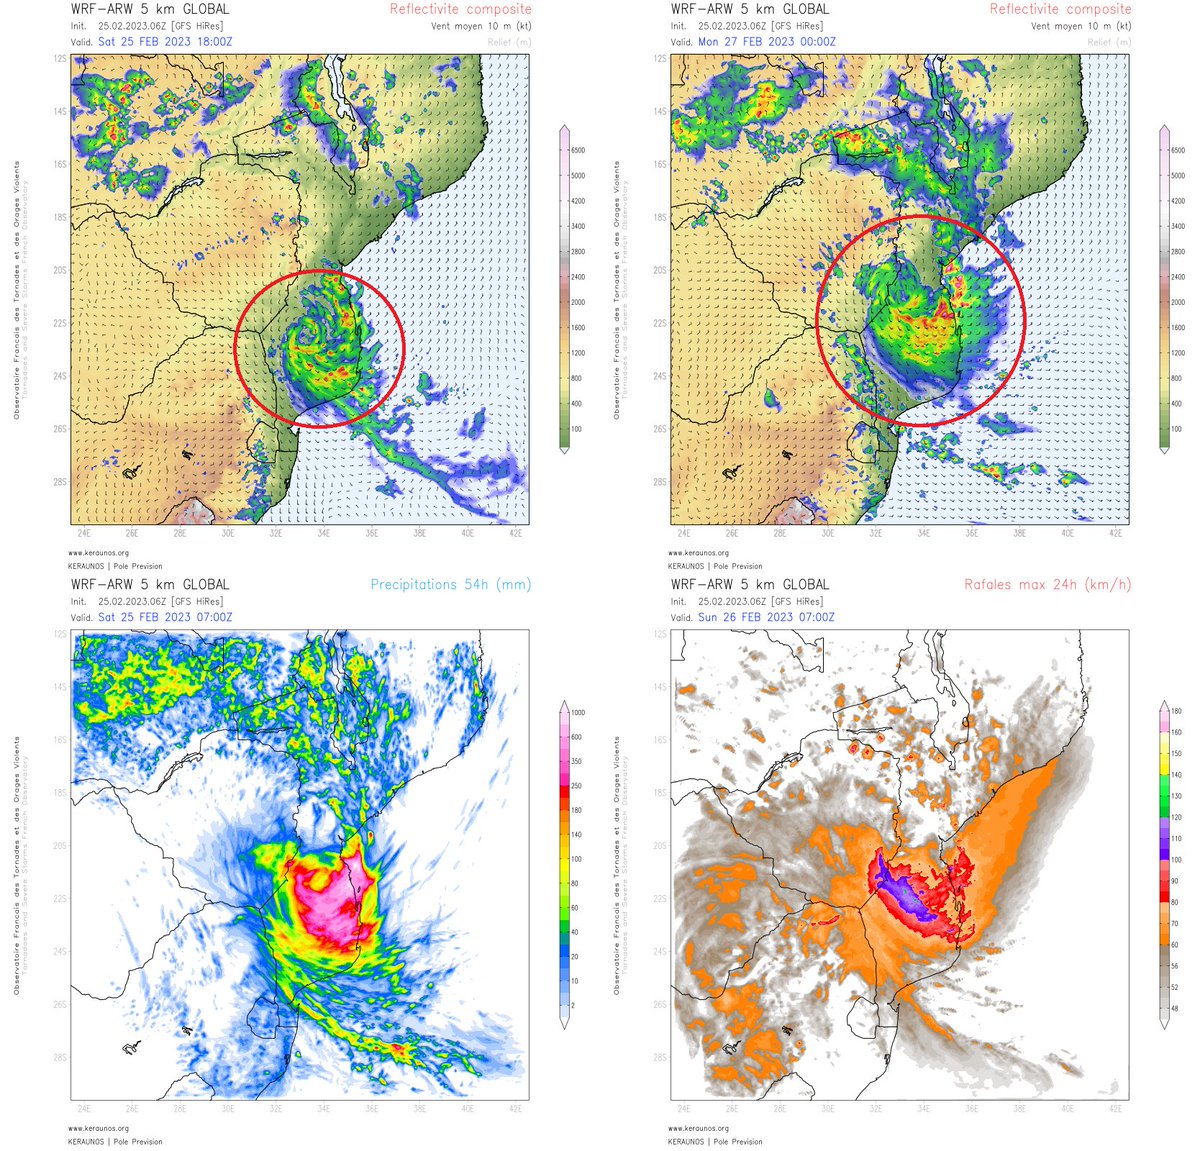 #Freddy va stationner sur le sud du #Mozambique ces prochains jours et y produire des pluies diluviennes. ARW 5km prévoit loc 600 à 800 mm de pluie d'ici lundi midi sur cette zone, soit l'équivalent d'1 an de pluie à #Paris. Des rafales de 100 à 120 km/h sont également attendues. 